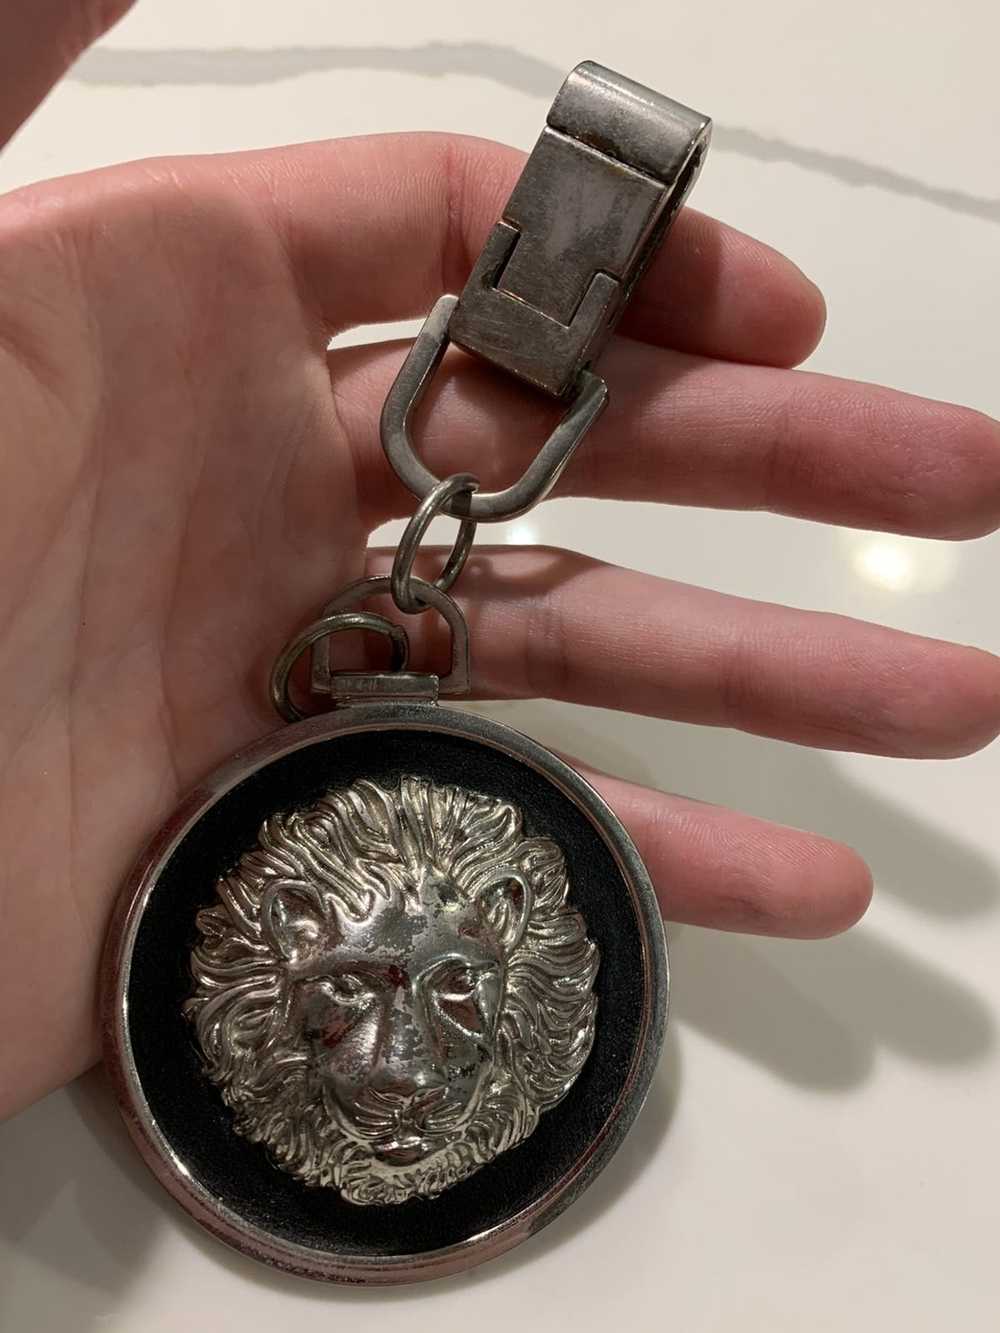 Versus Versace Versus Versace Lion Keychain - image 5